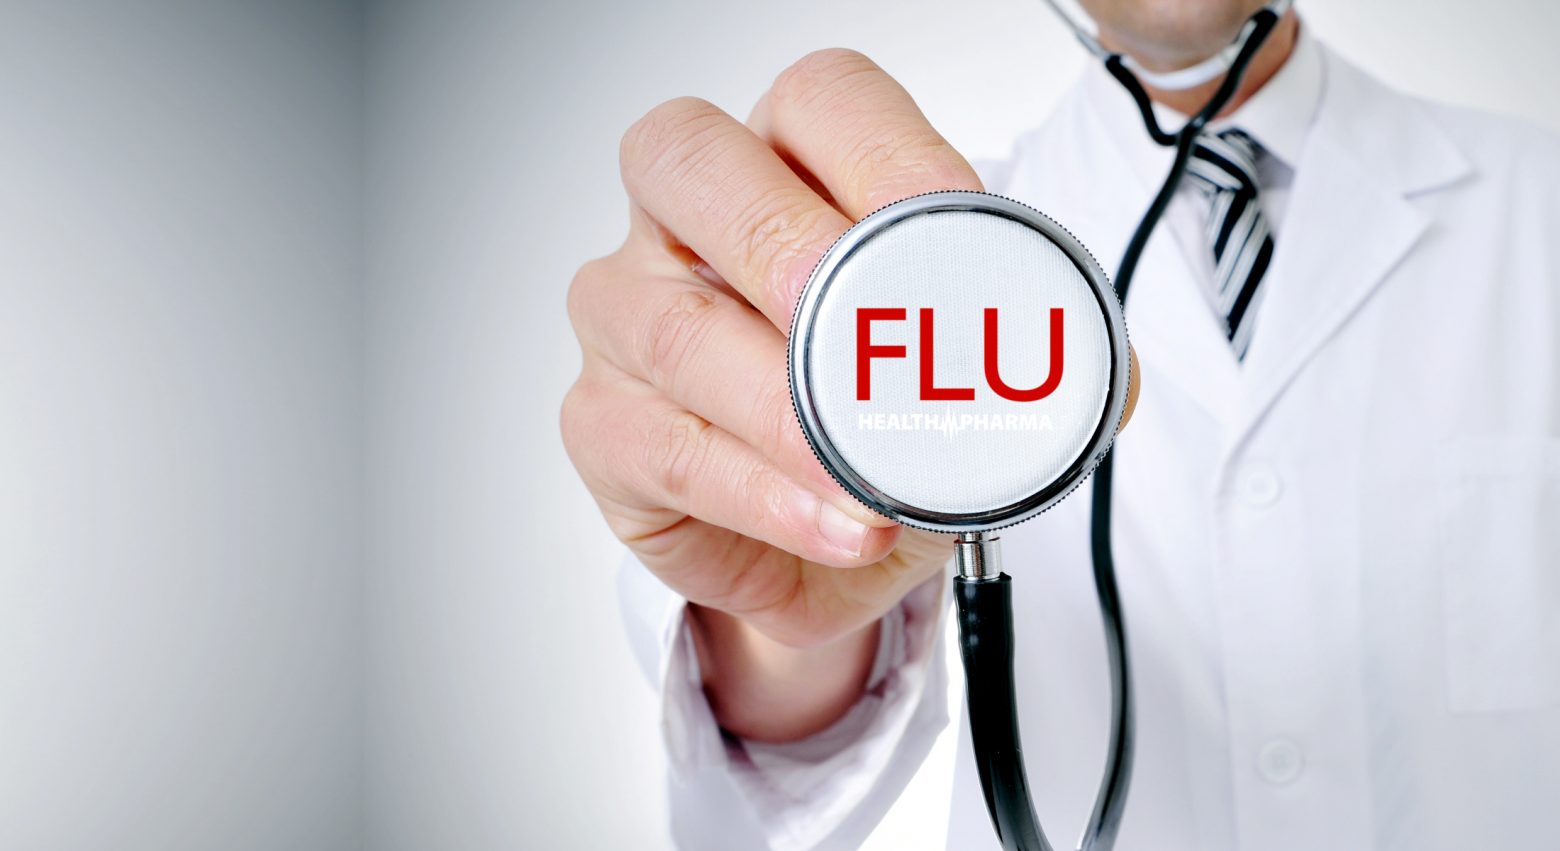 Ηνωμένο Βασίλειο - πρόβλεψη σοκ για έξαρση γρίπης